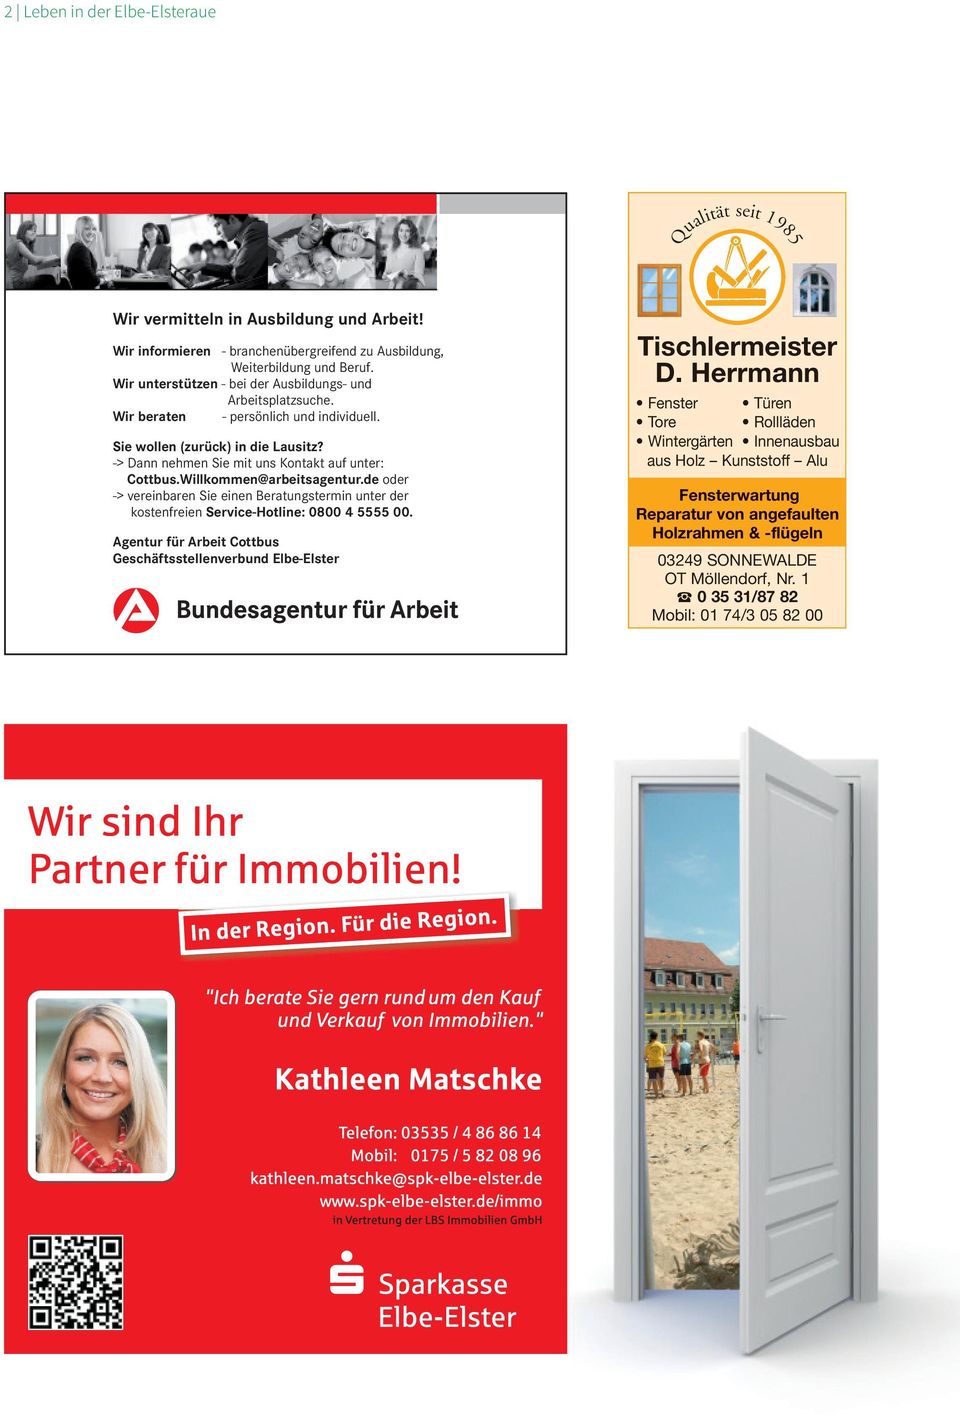 Willkommen@arbeitsagentur.de oder -> vereinbaren Sie einen Beratungstermin unter der kostenfreien Service-Hotline: 0800 45555 00.